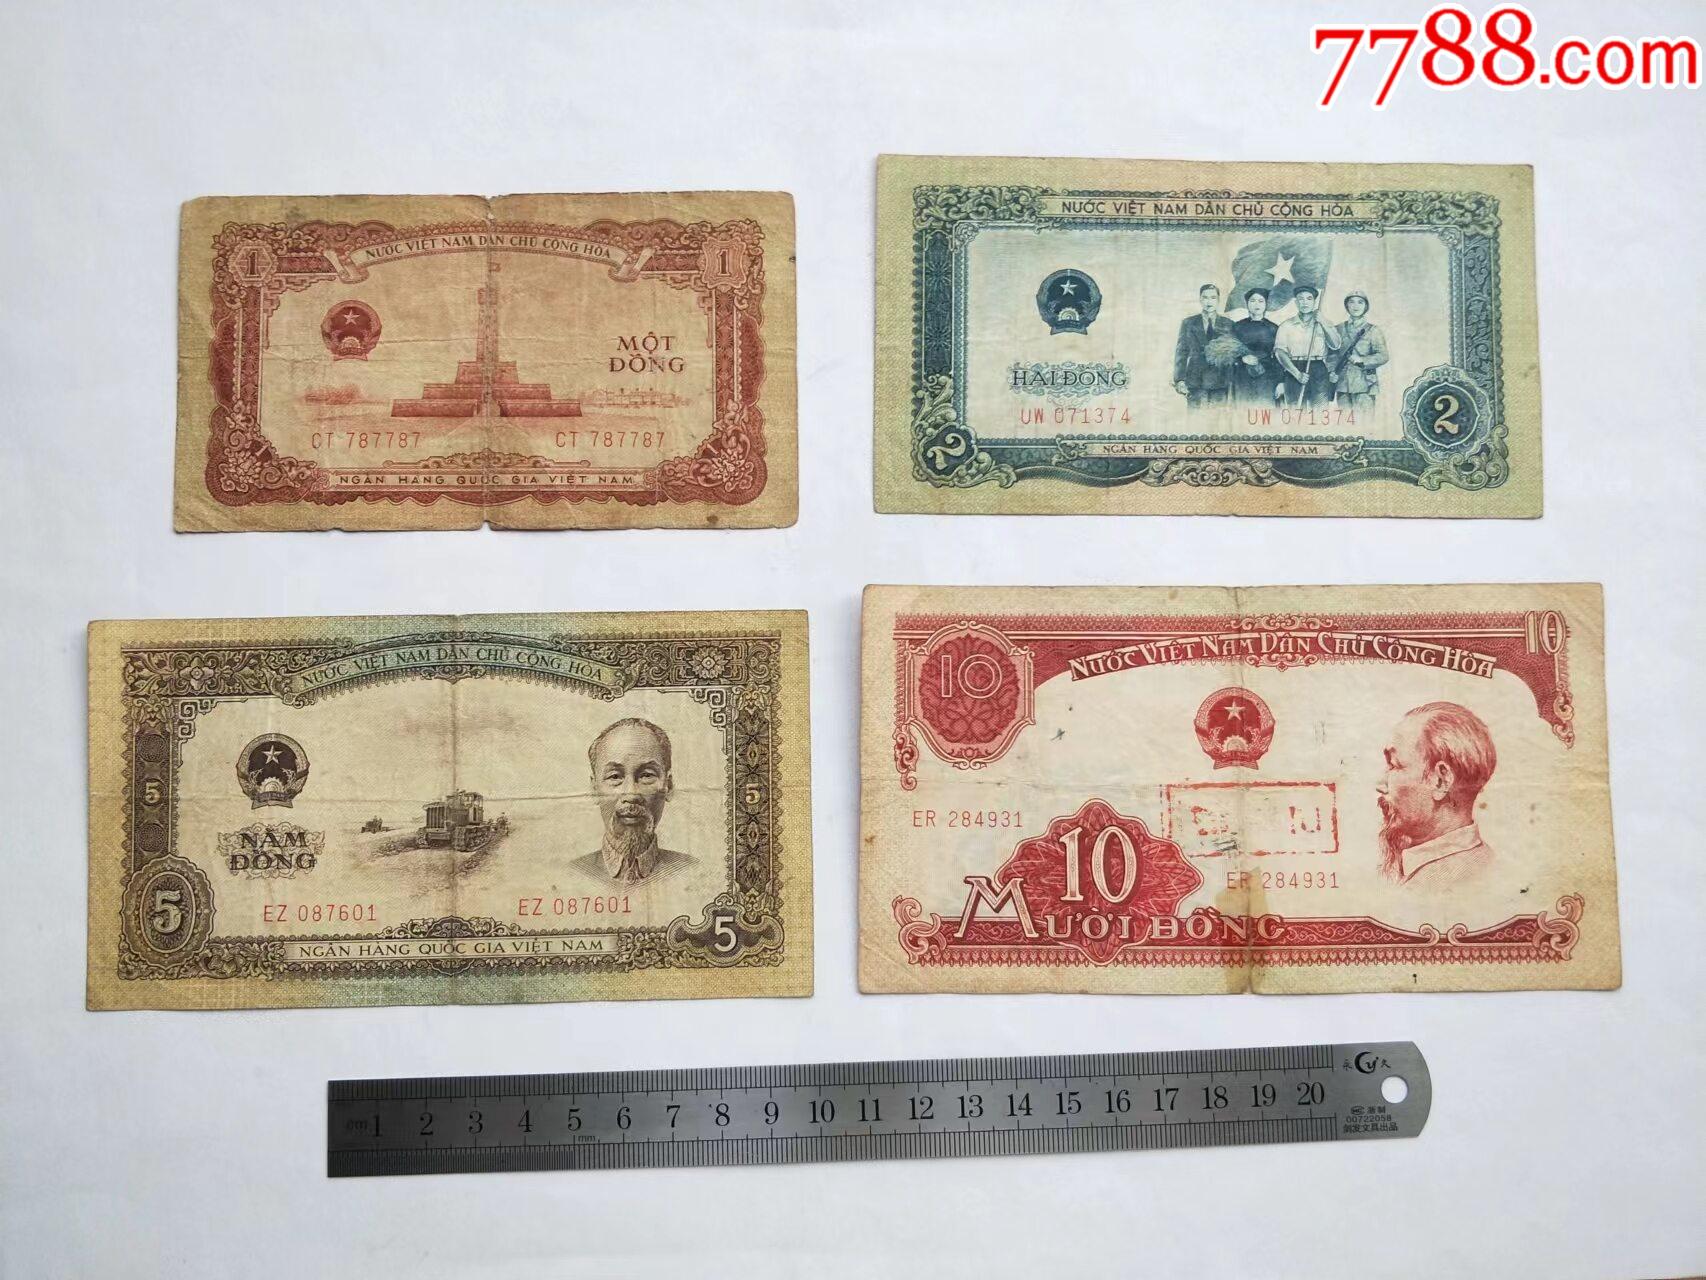 这是什么钱啊，越南盾还是新加坡元_百度知道